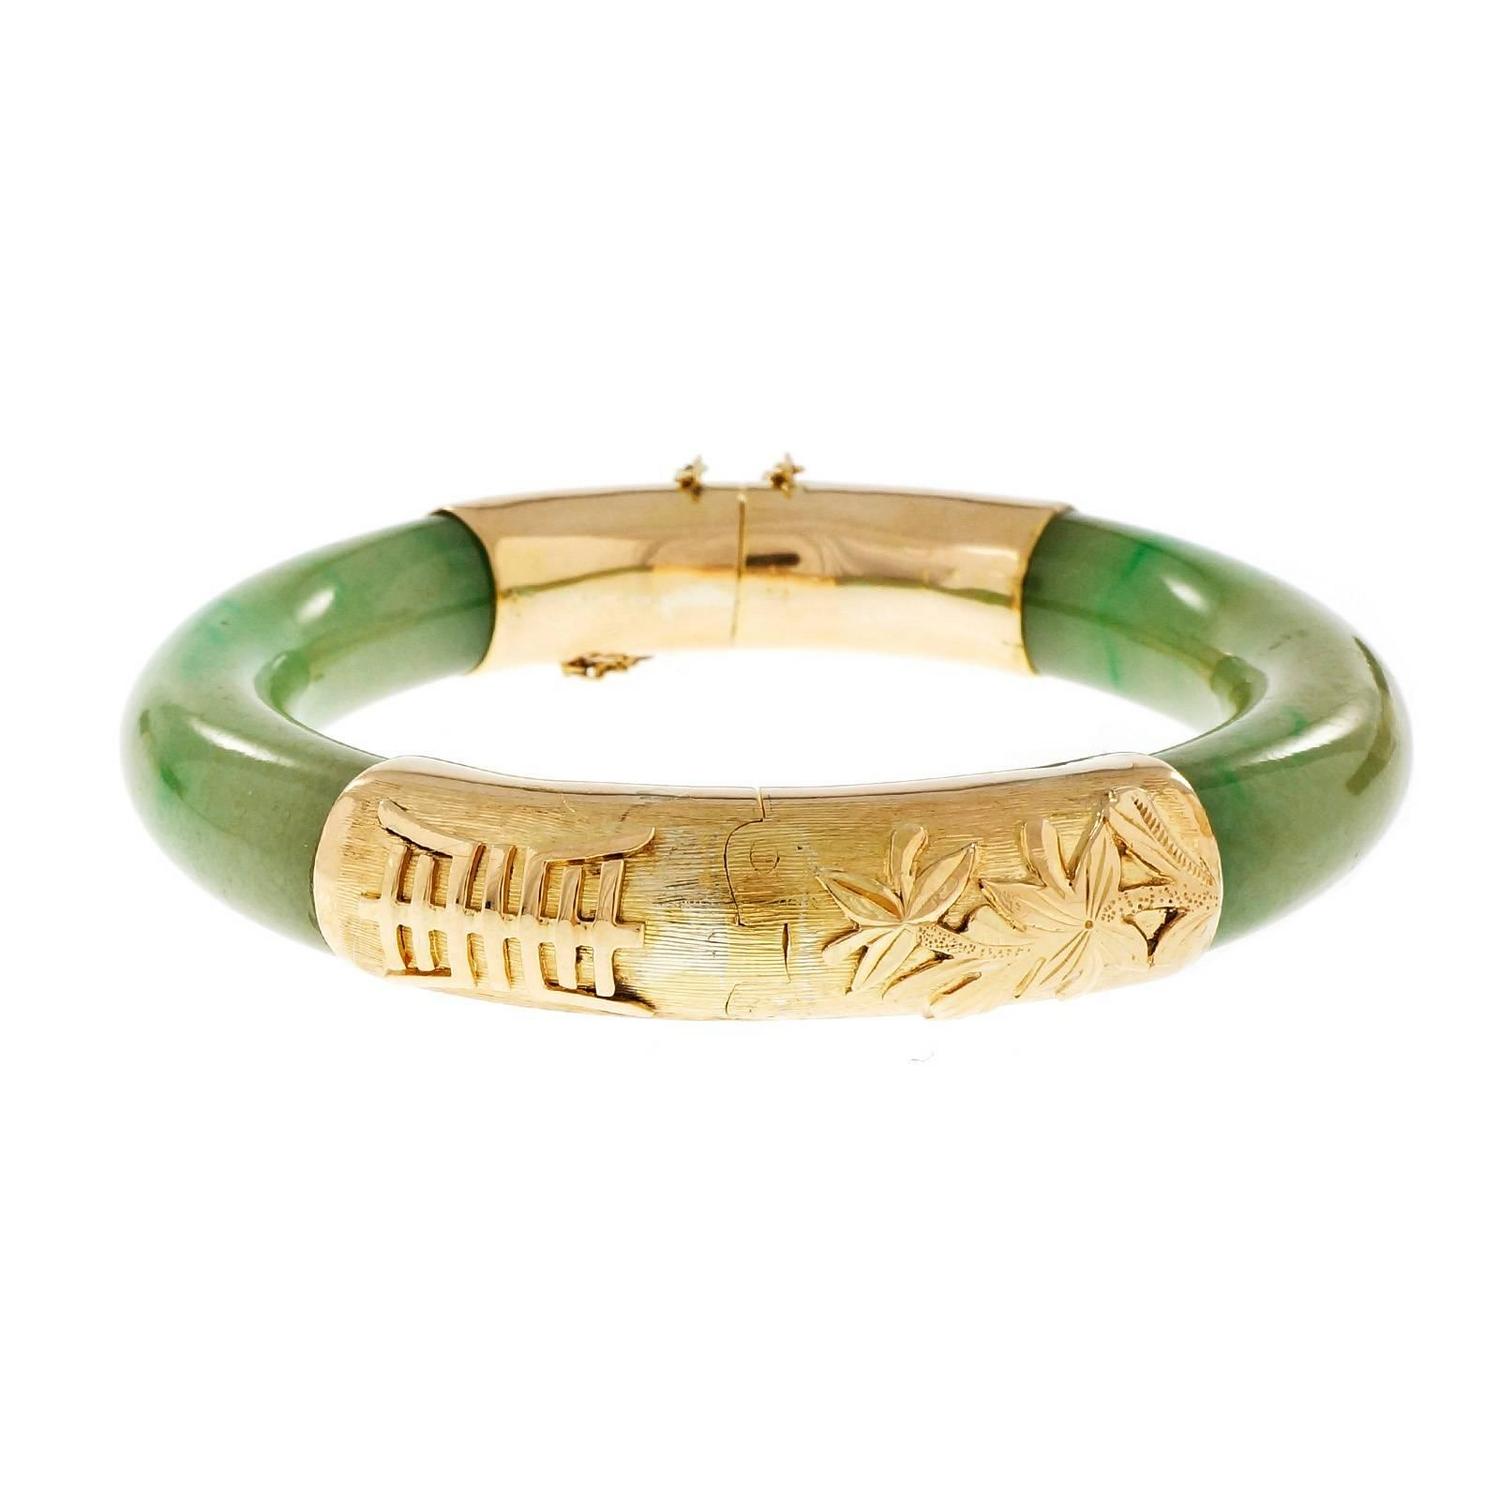 Natural Green Jadeite Jade Gold Bangle Bracelet For Sale at 1stdibs